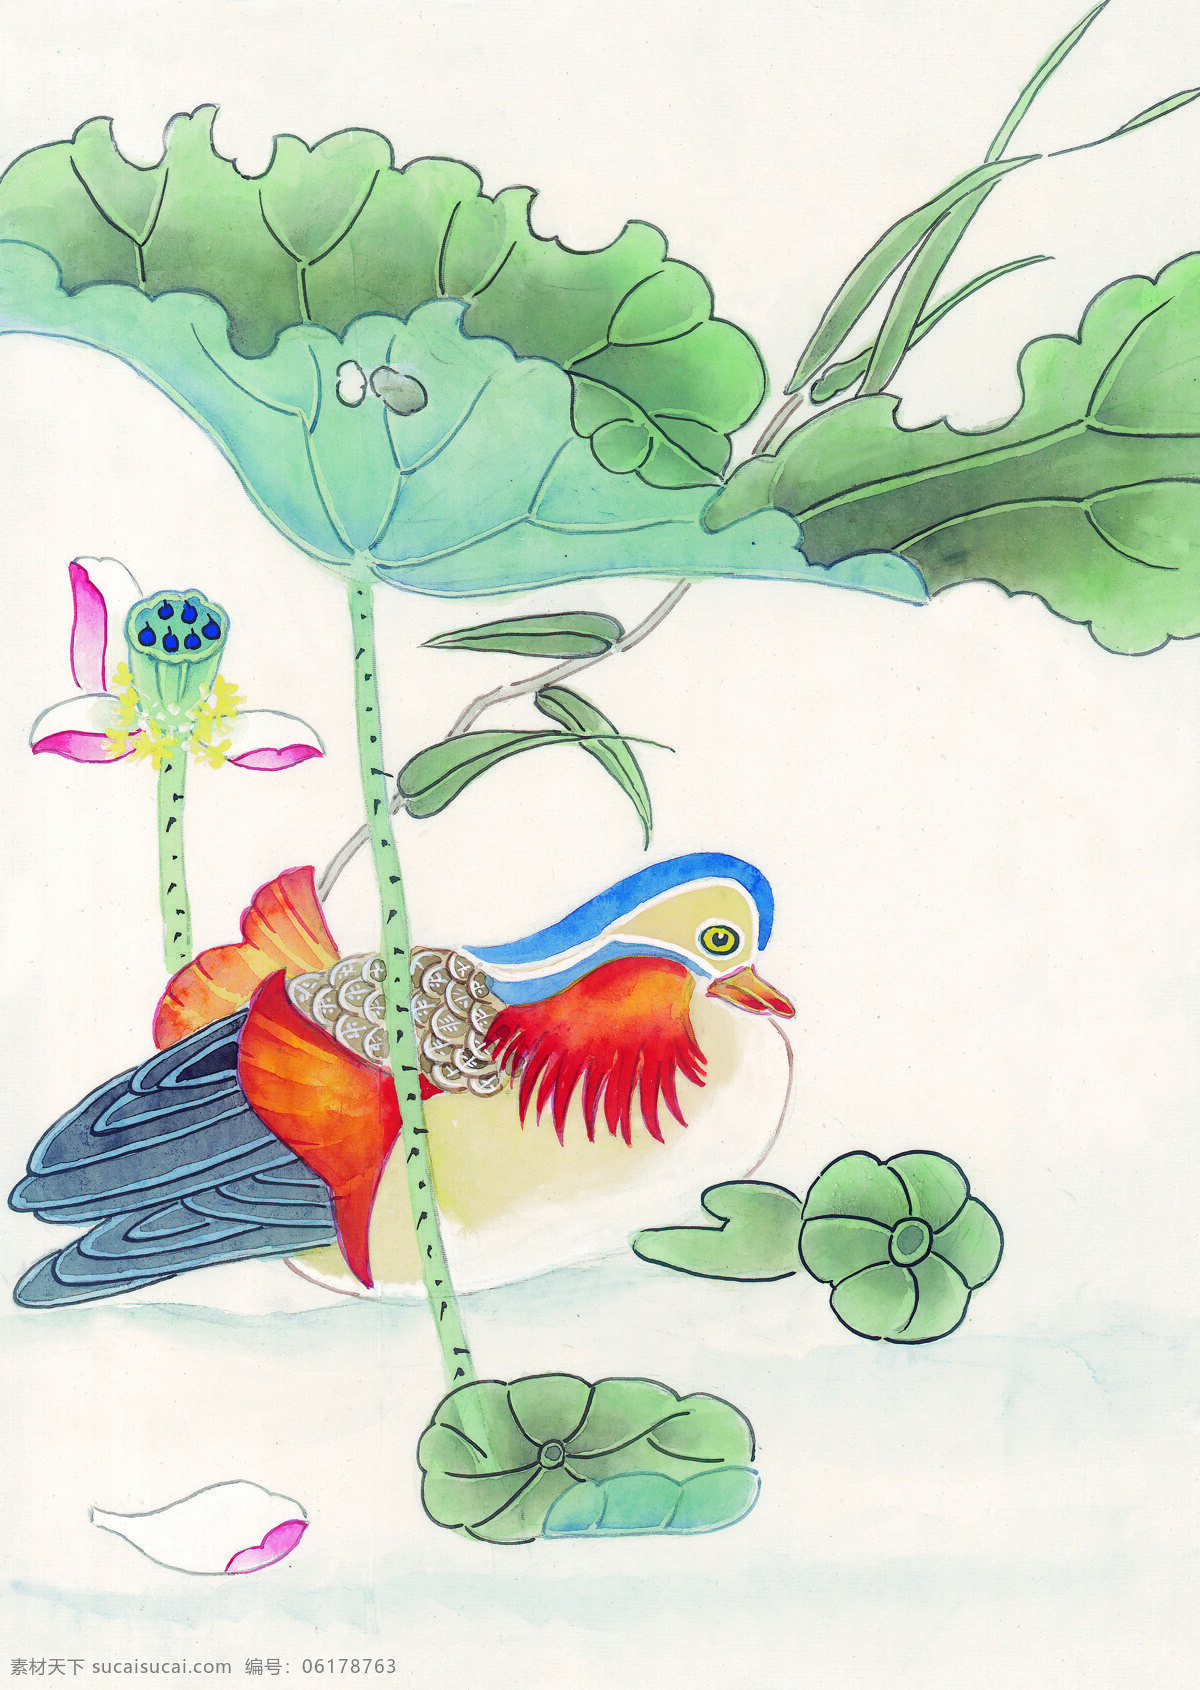 中华 艺术 绘画 古画 动物 孔雀 天鹅 鸳鸯 凤凰 中国 古代 传统绘画艺术 美术绘画 名画欣赏 水彩画 水墨画 文化艺术